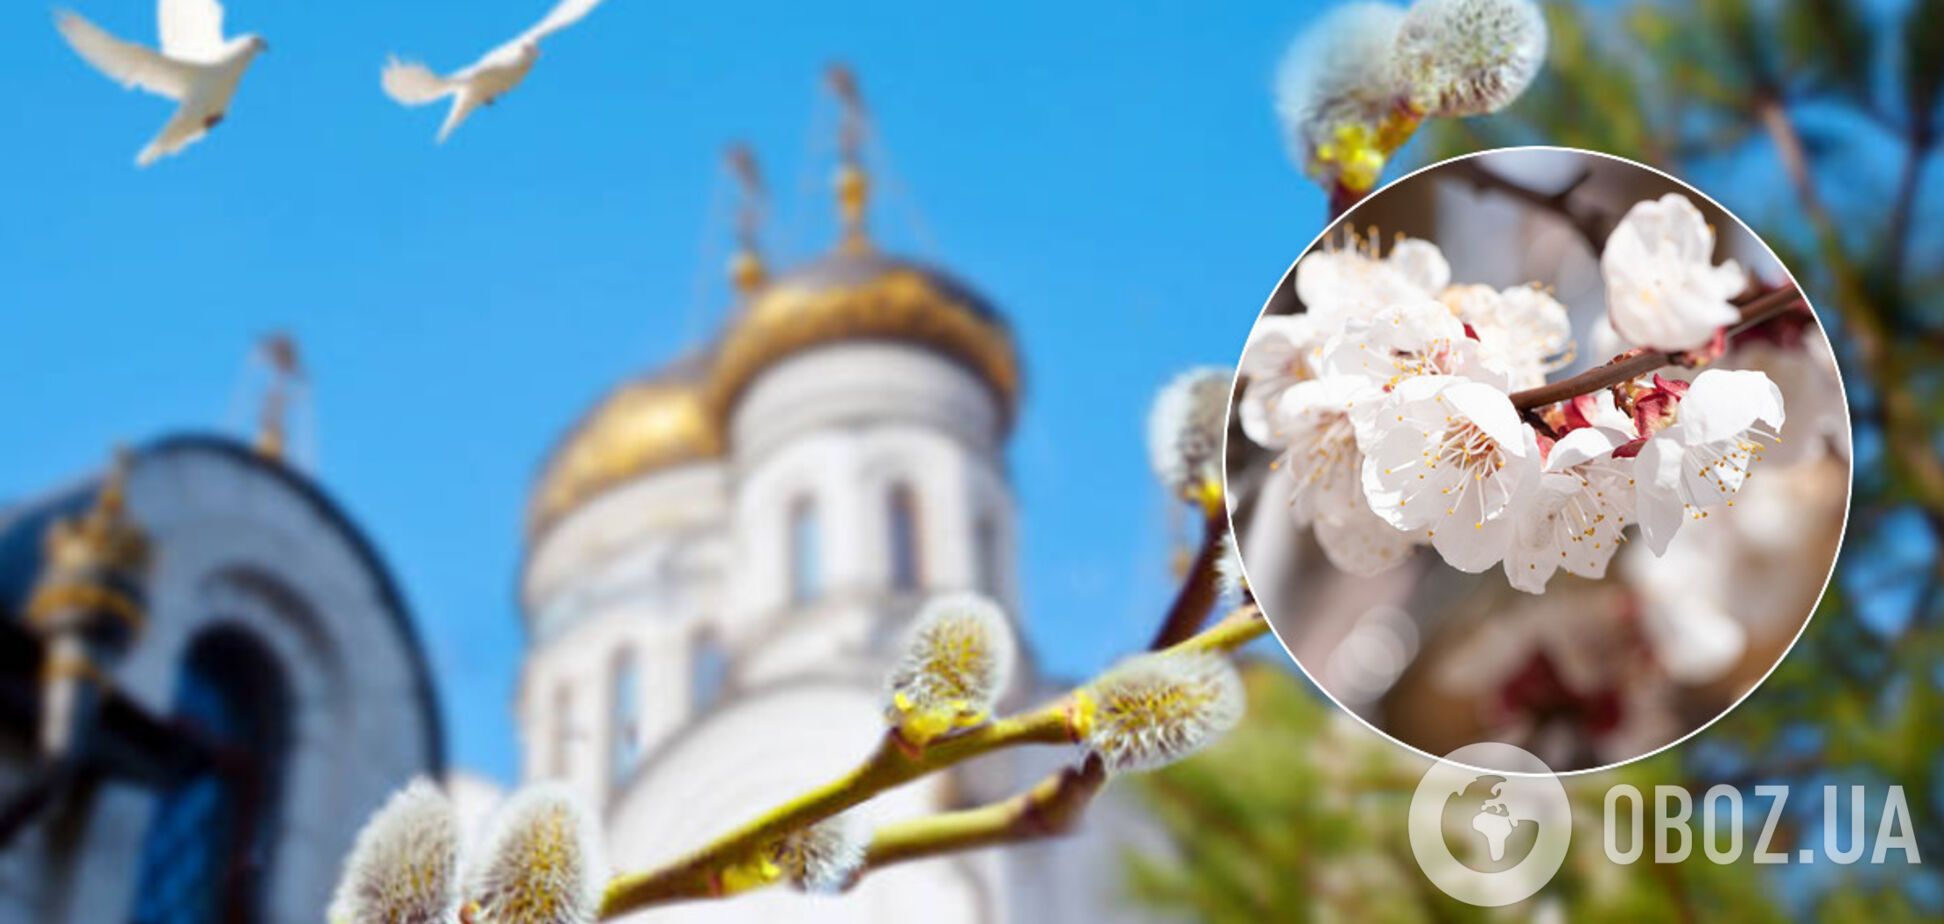 В Вербное воскресенье Украине повезет с погодой: синоптик озвучила прогноз на выходные